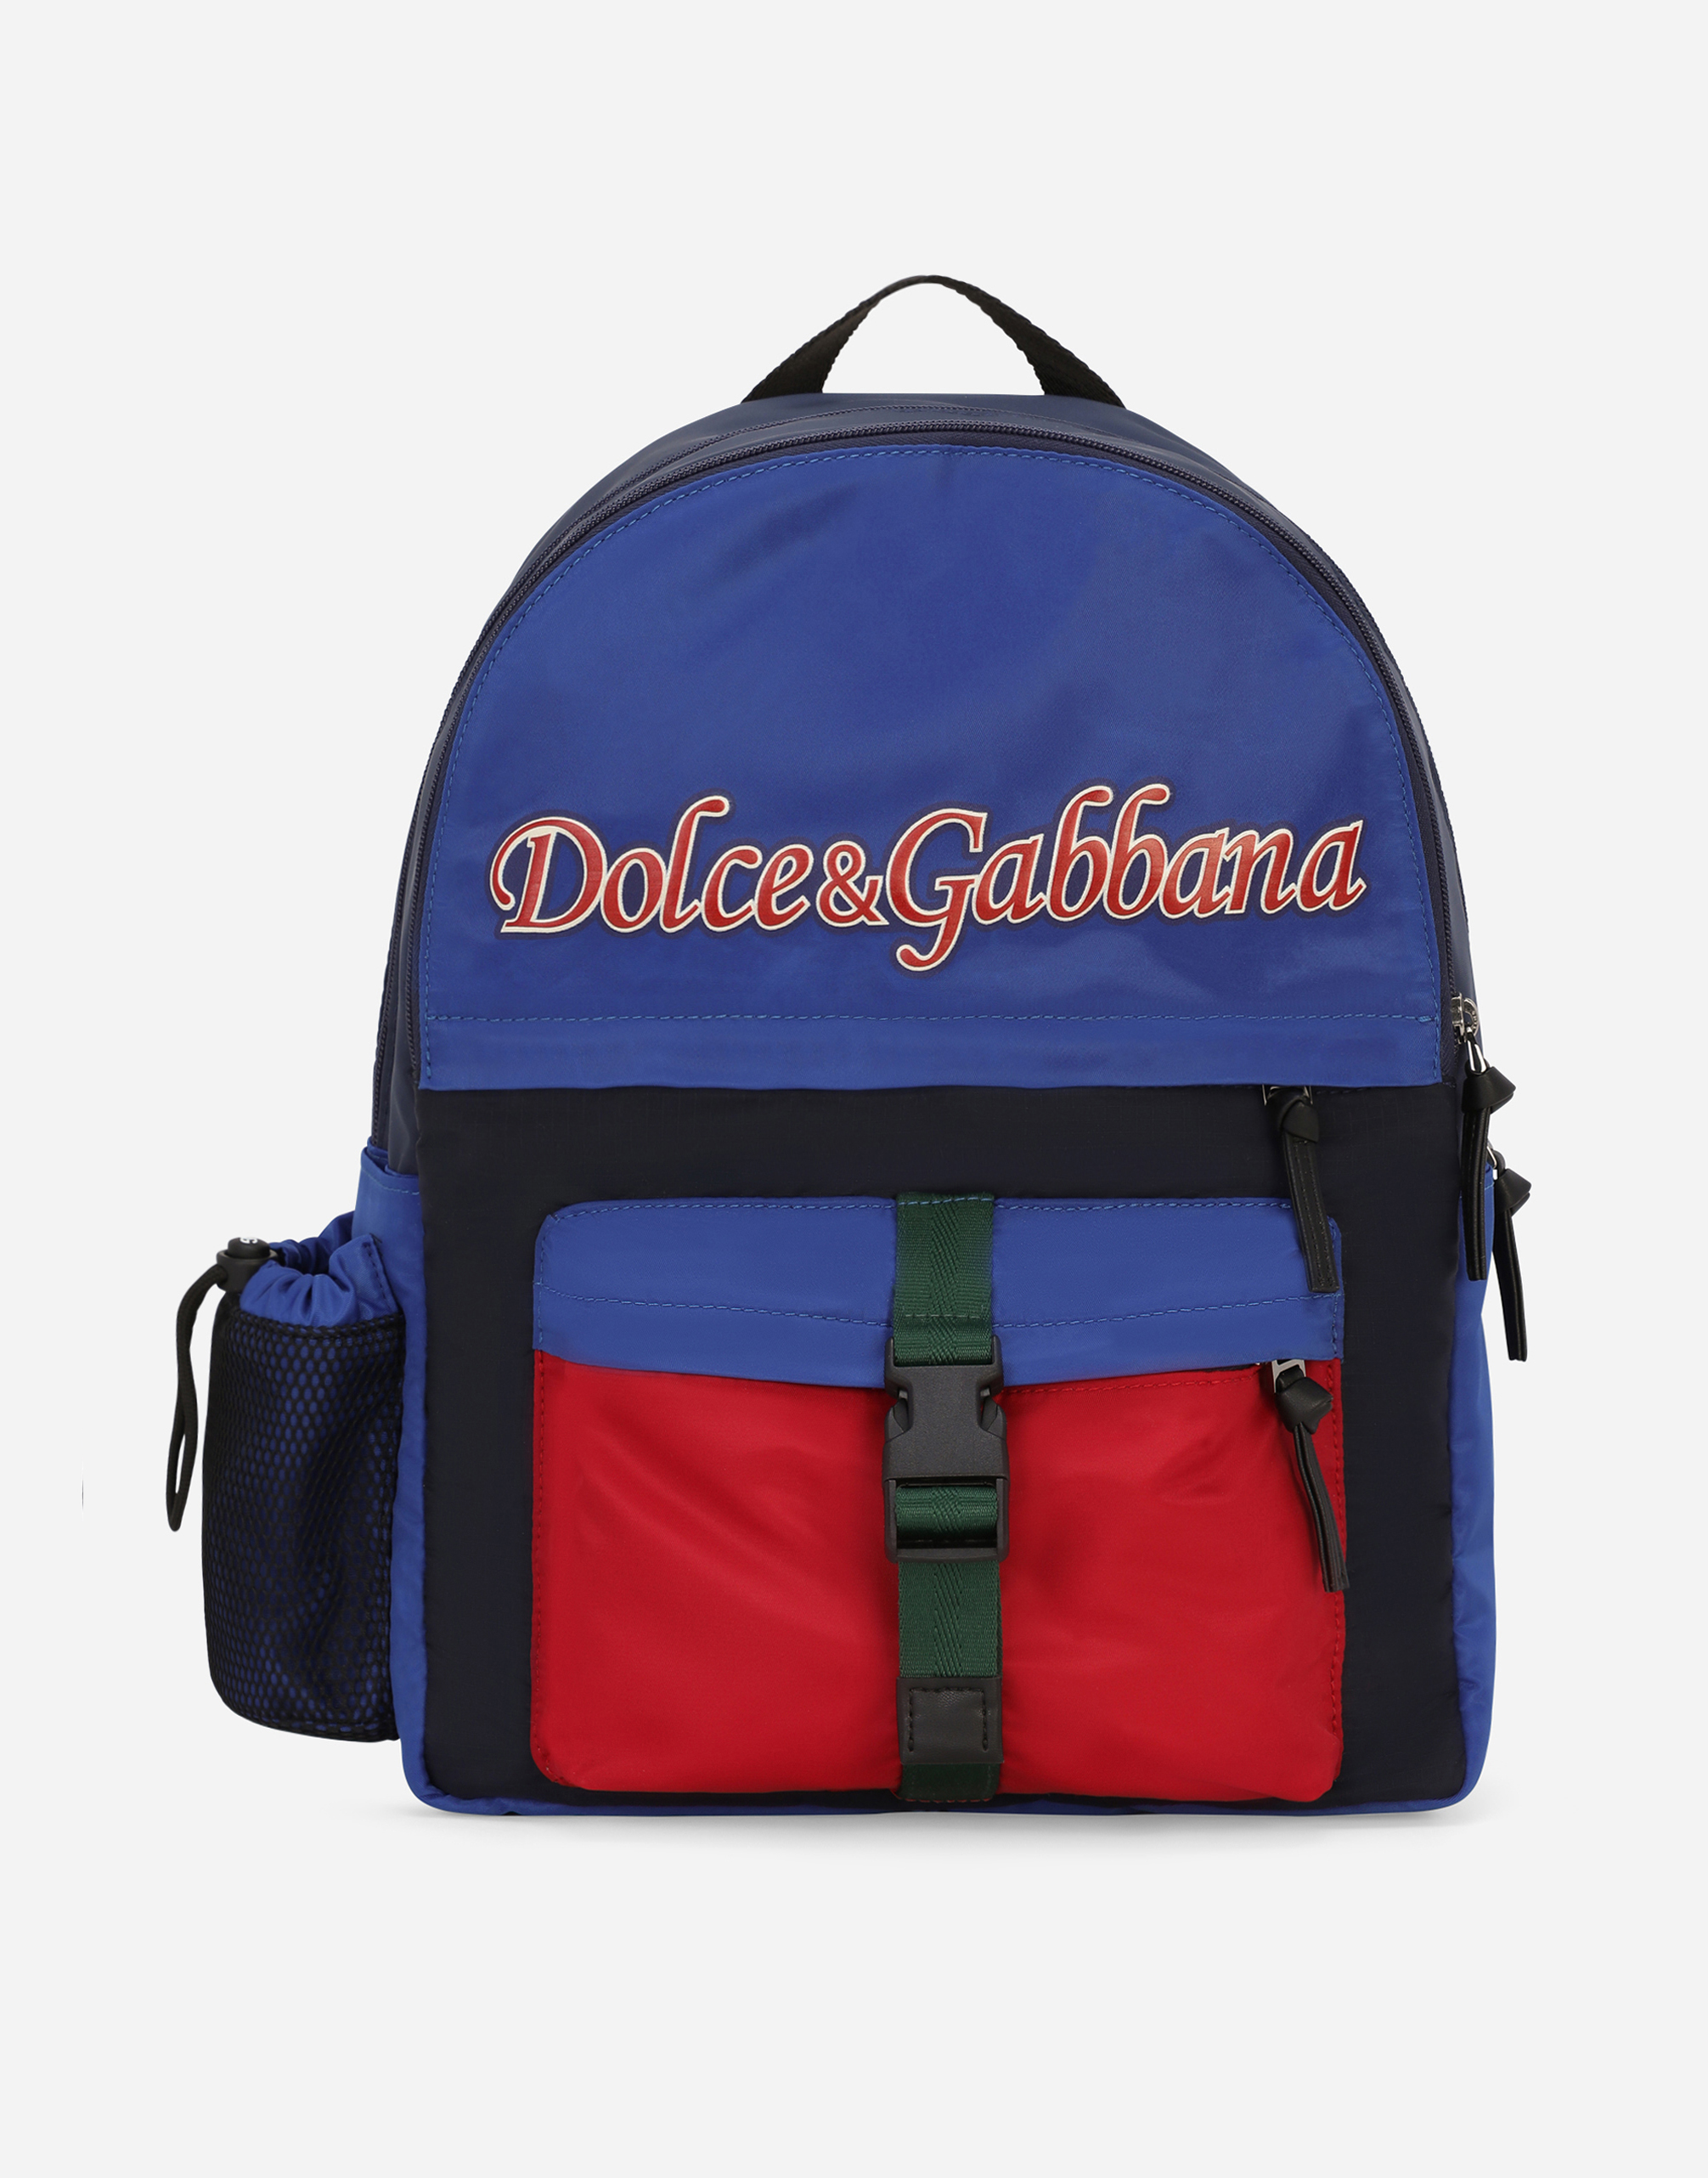 Dolce & Gabbana Kids' Nylon Backpack In Multicolor